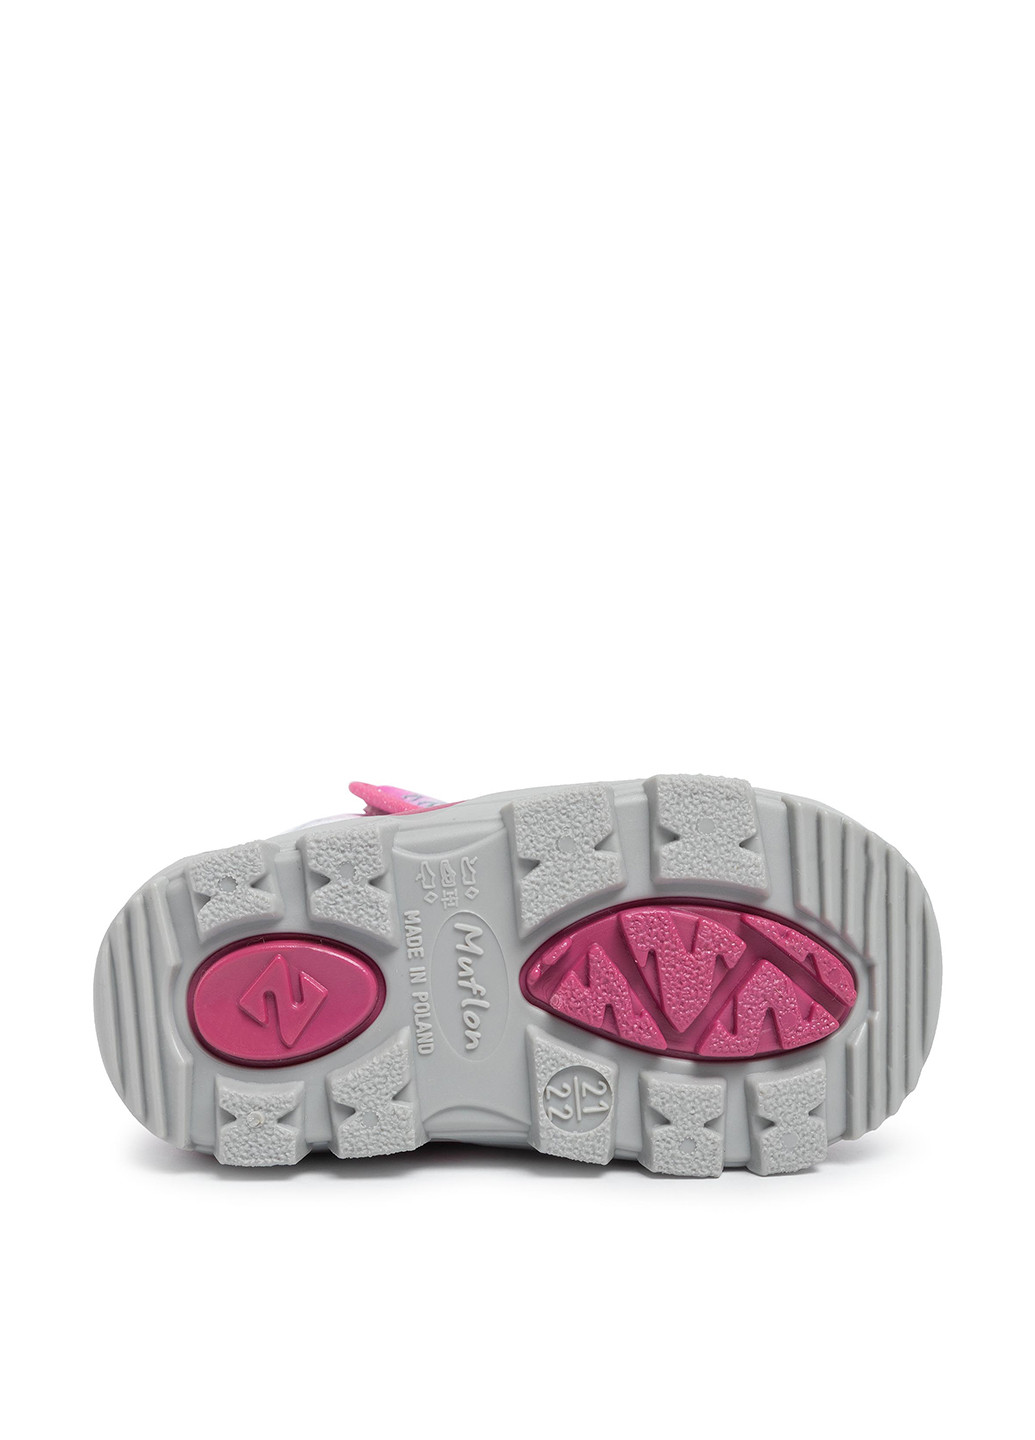 Розово-лиловые зимние чоботи 22-388dz Muflon